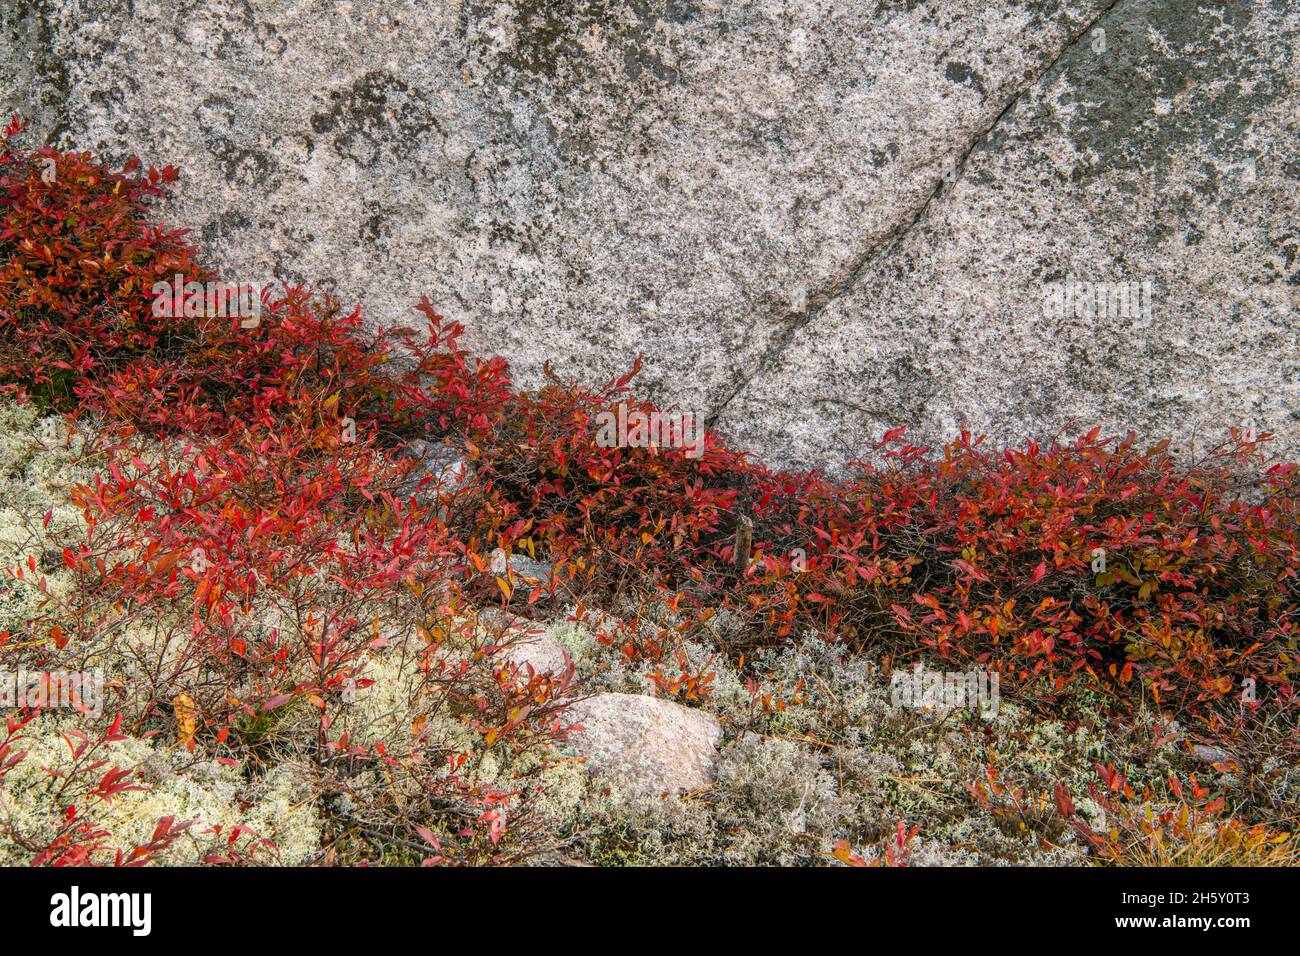 Afloramiento de rocas y colonias de arándanos de arbusto bajo (Vaccinium angustifolium) en otoño, Parque Provincial Lake Superior, Ontario, Canadá Foto de stock